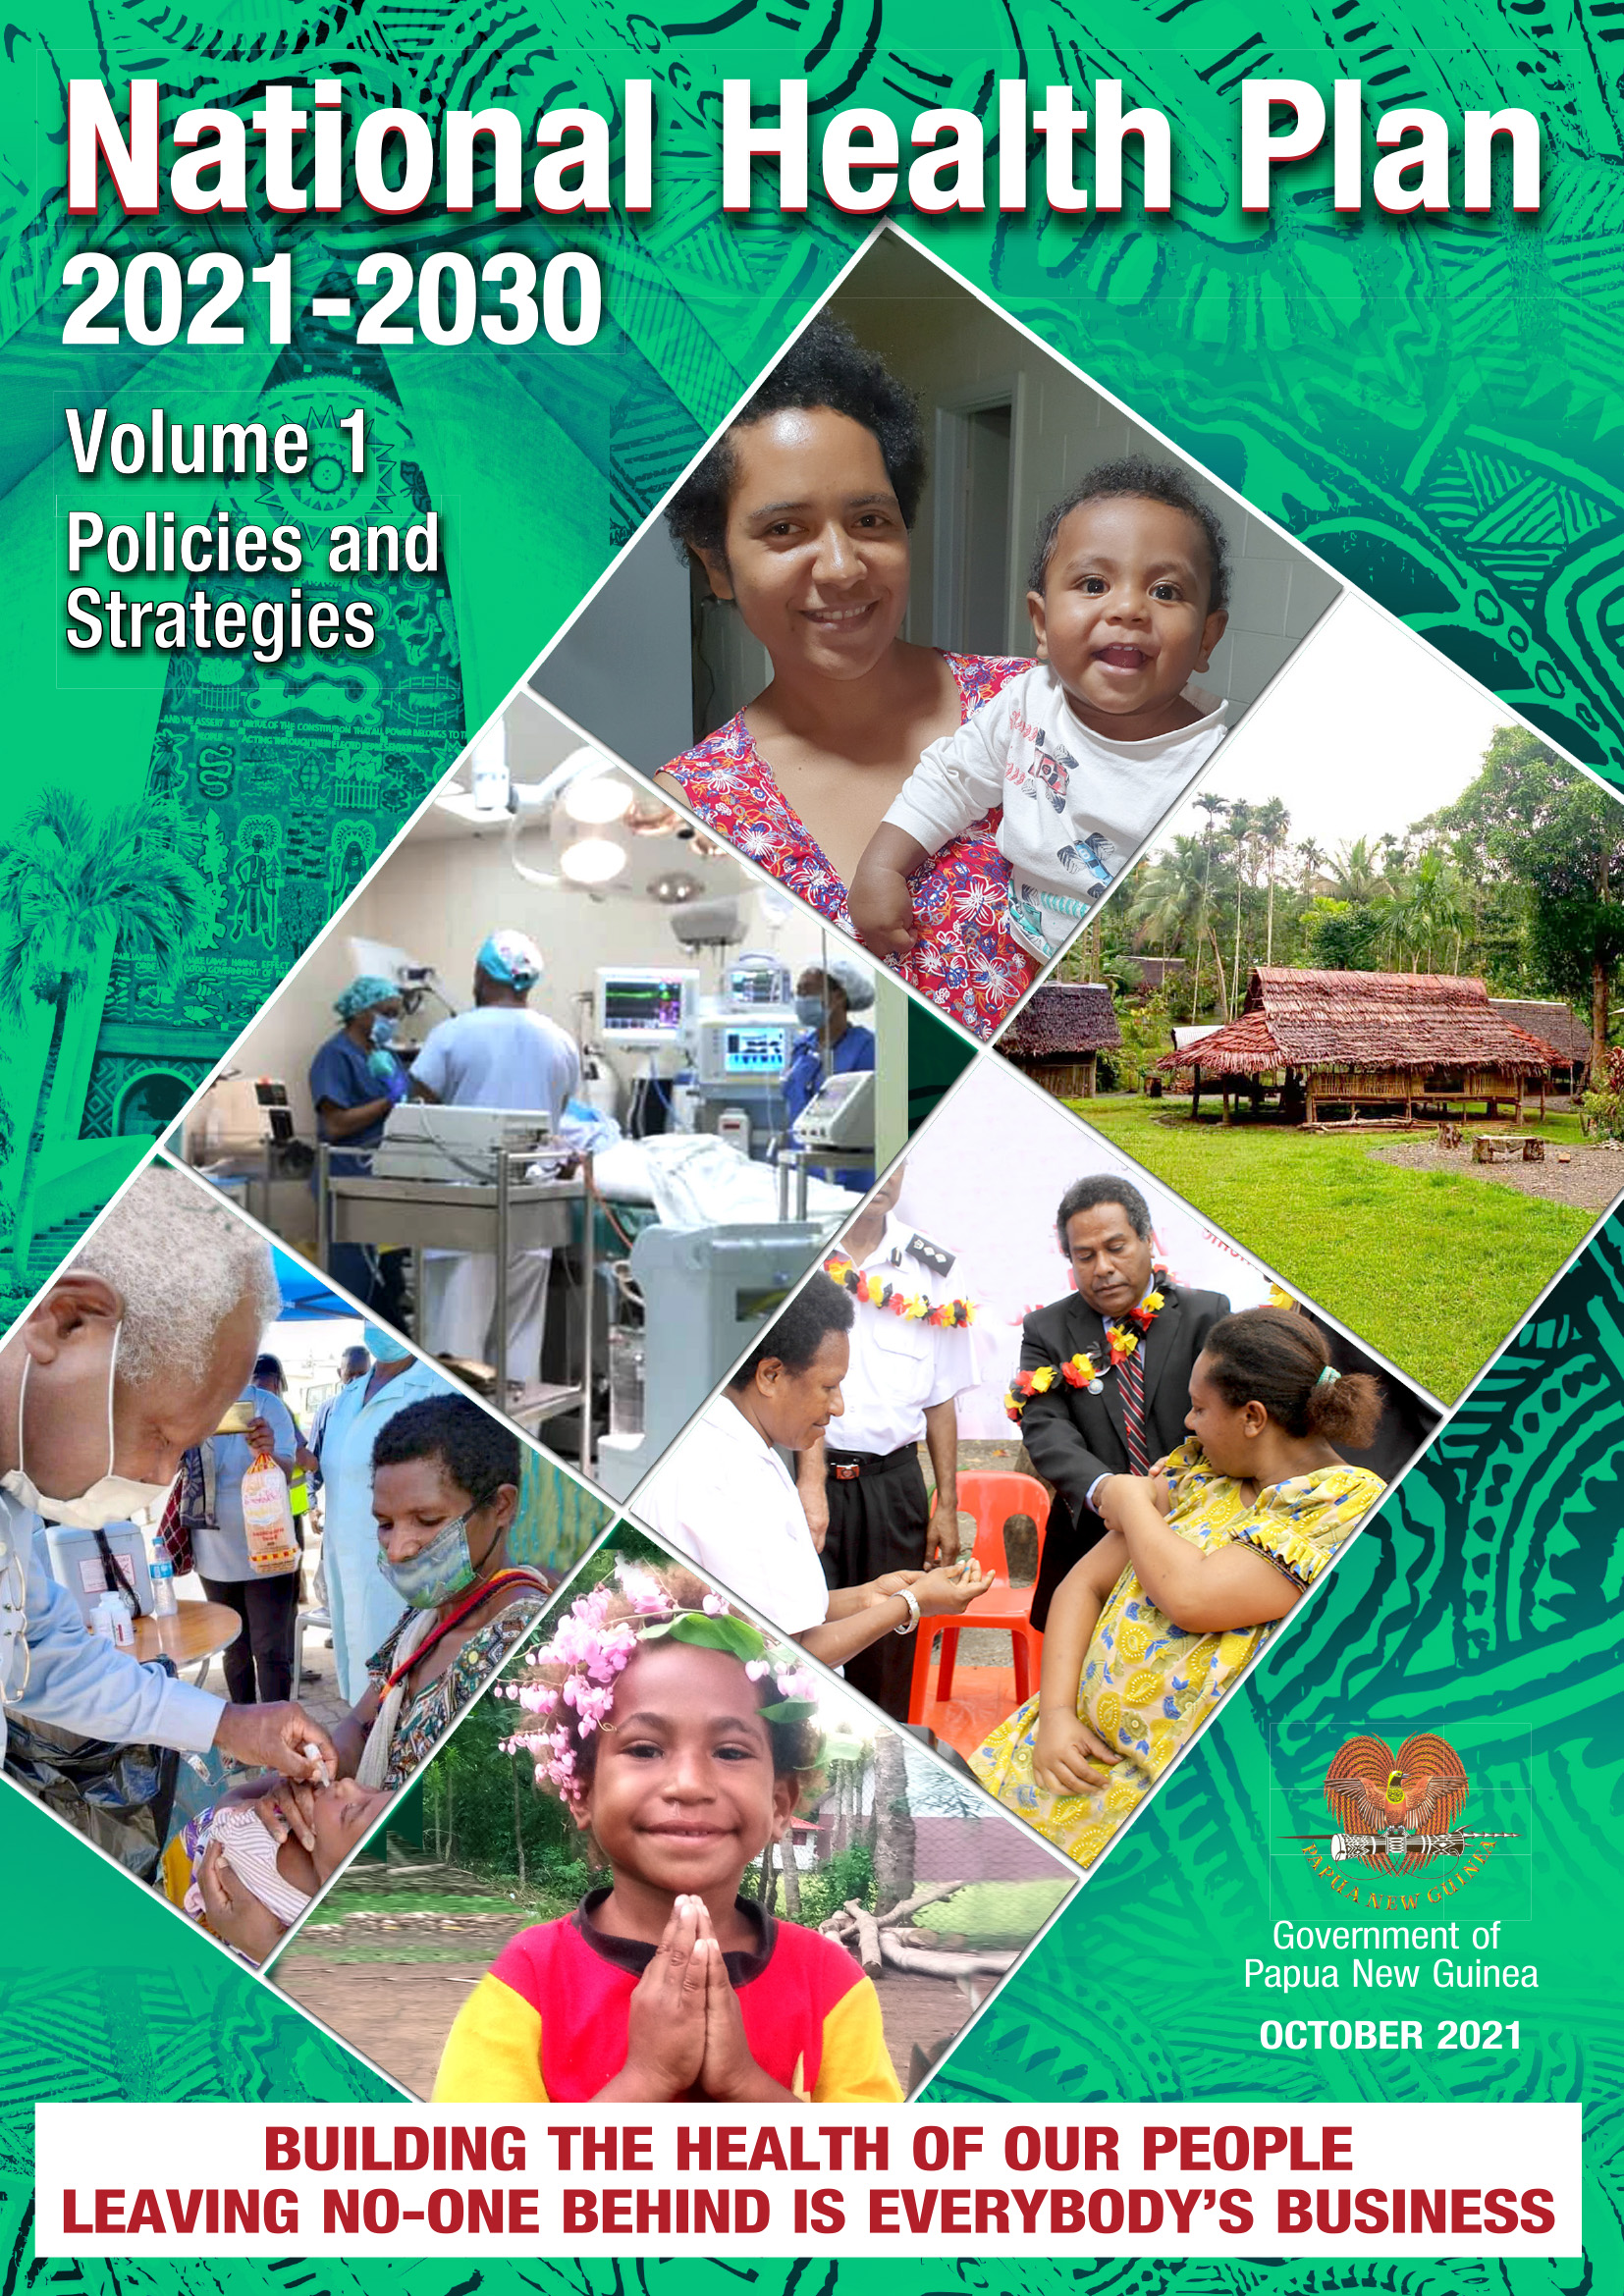 Plan national de santé 2021-2030, volume 1 